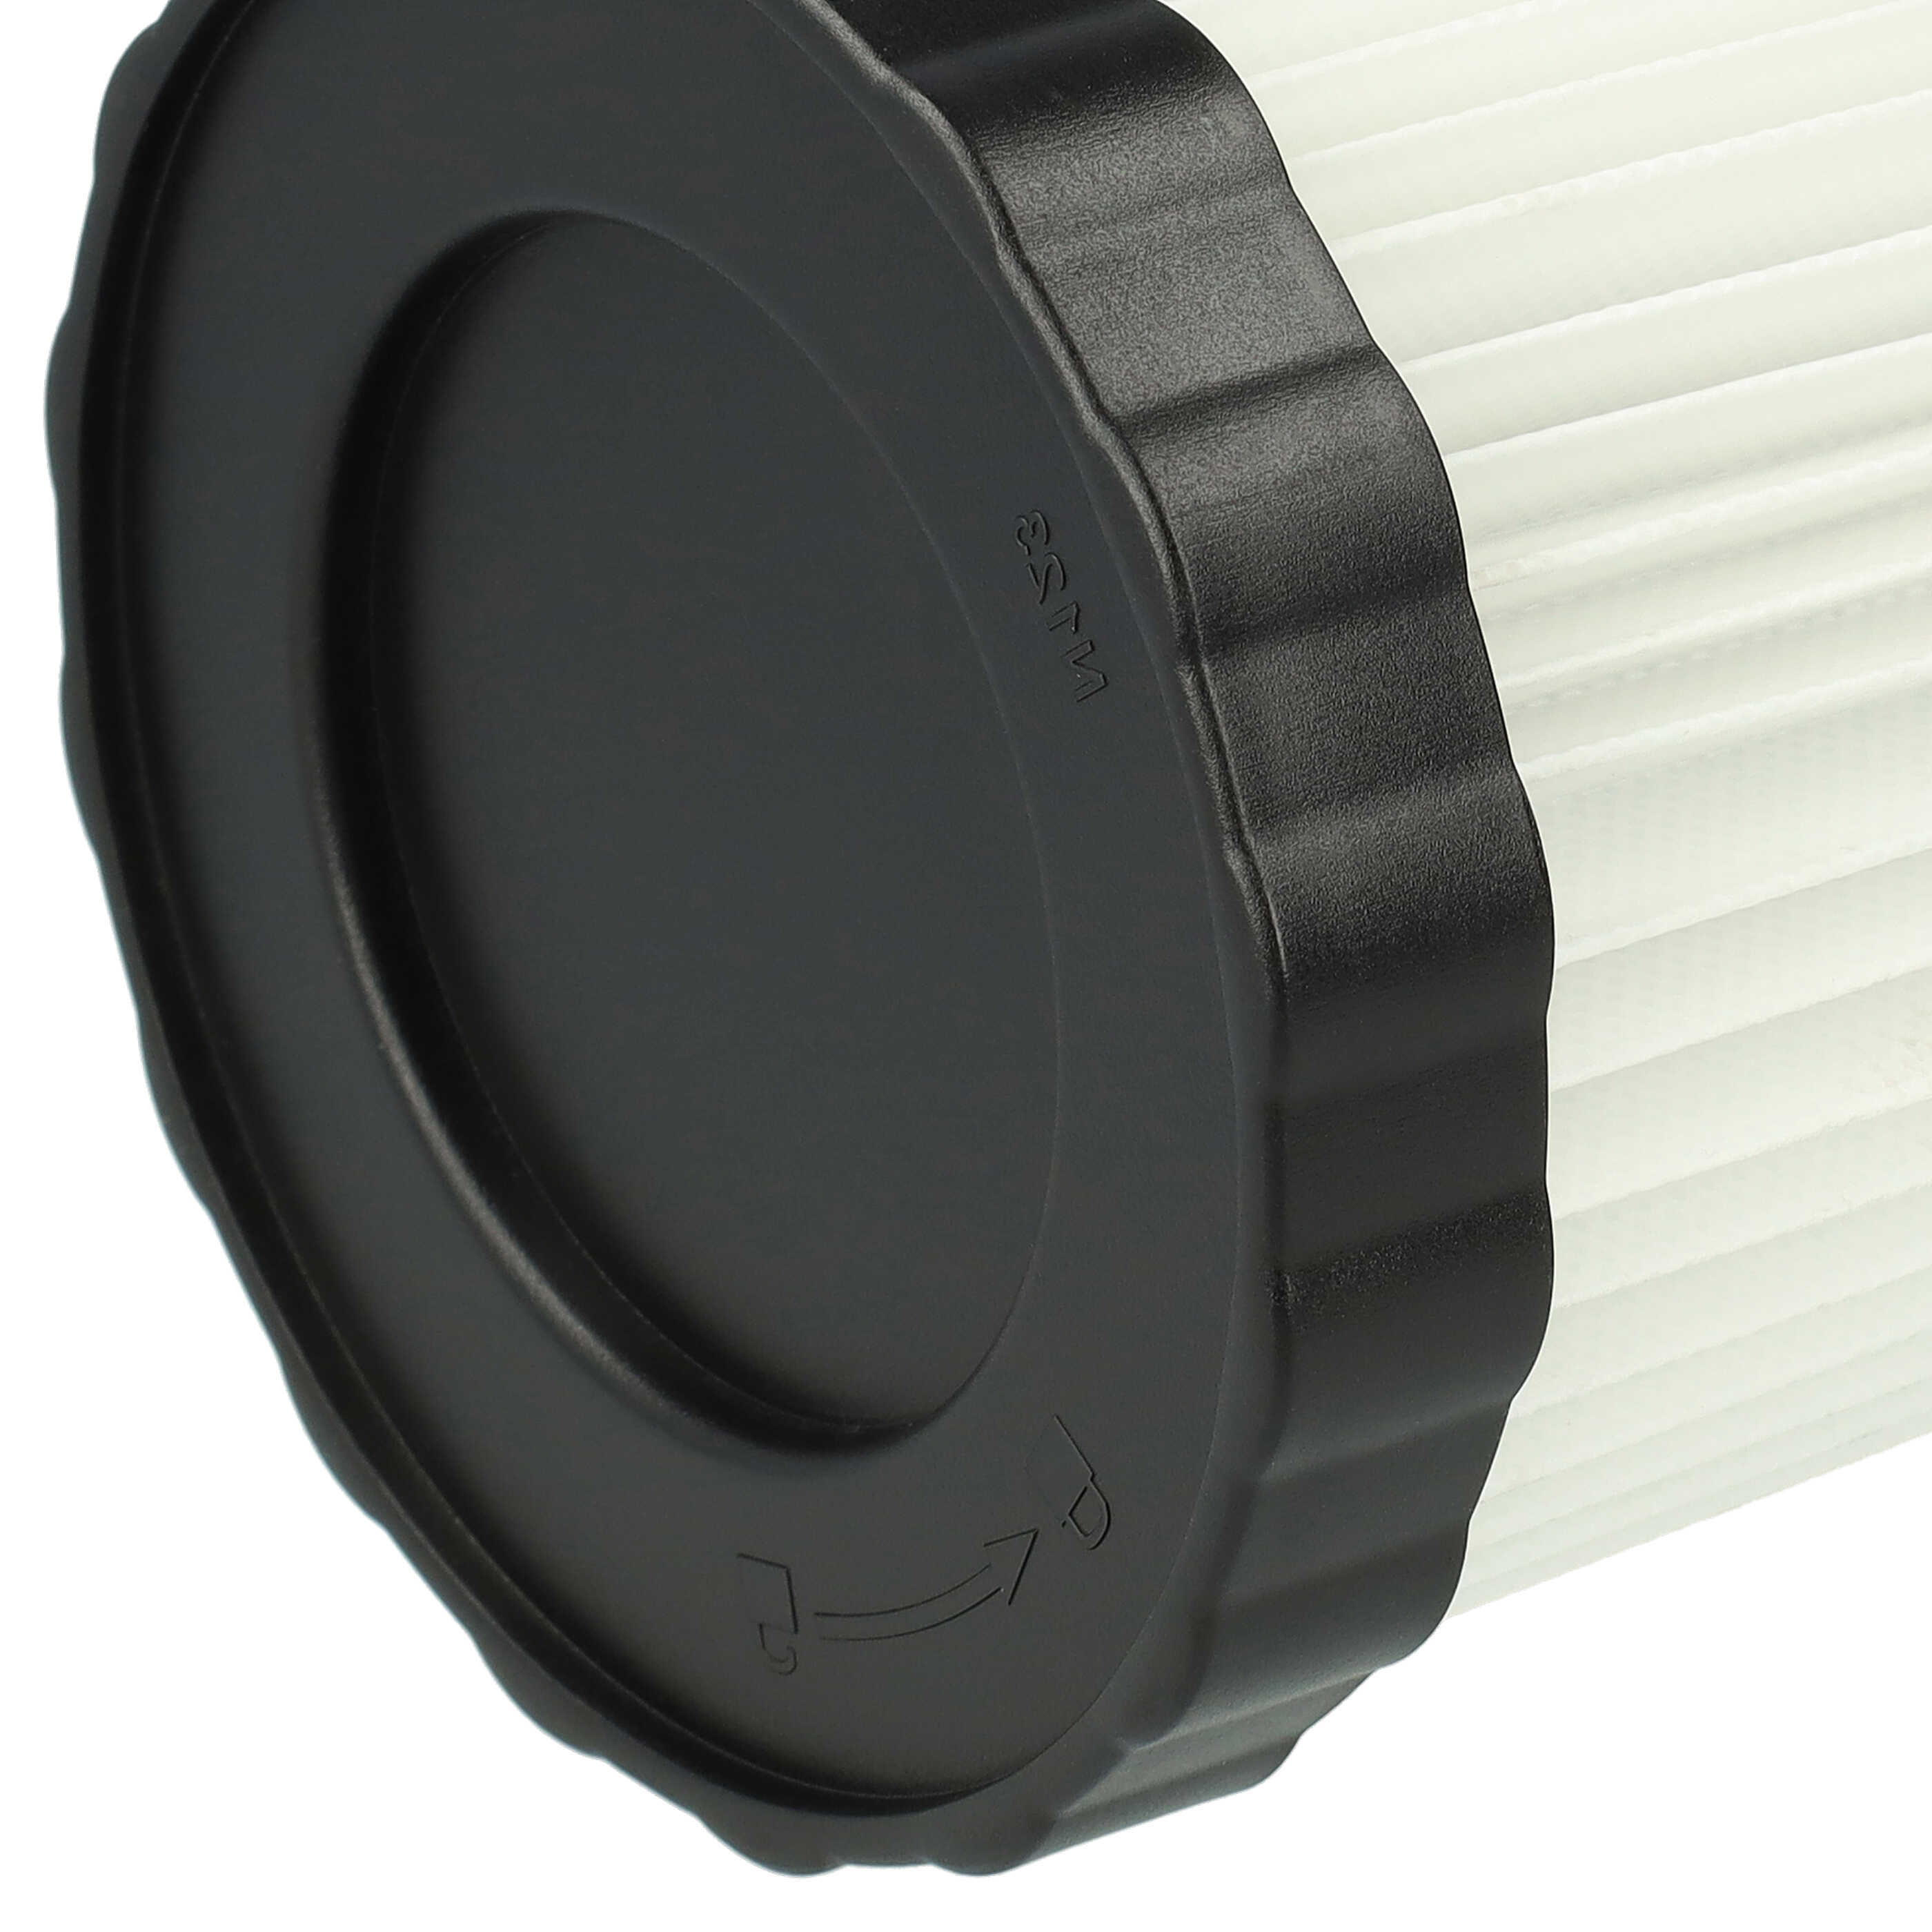 2x Filtro sostituisce Bosch 1 600 A01 1RT, 2 608 000 663 per aspirapolvere - filtro a pieghe, bianco